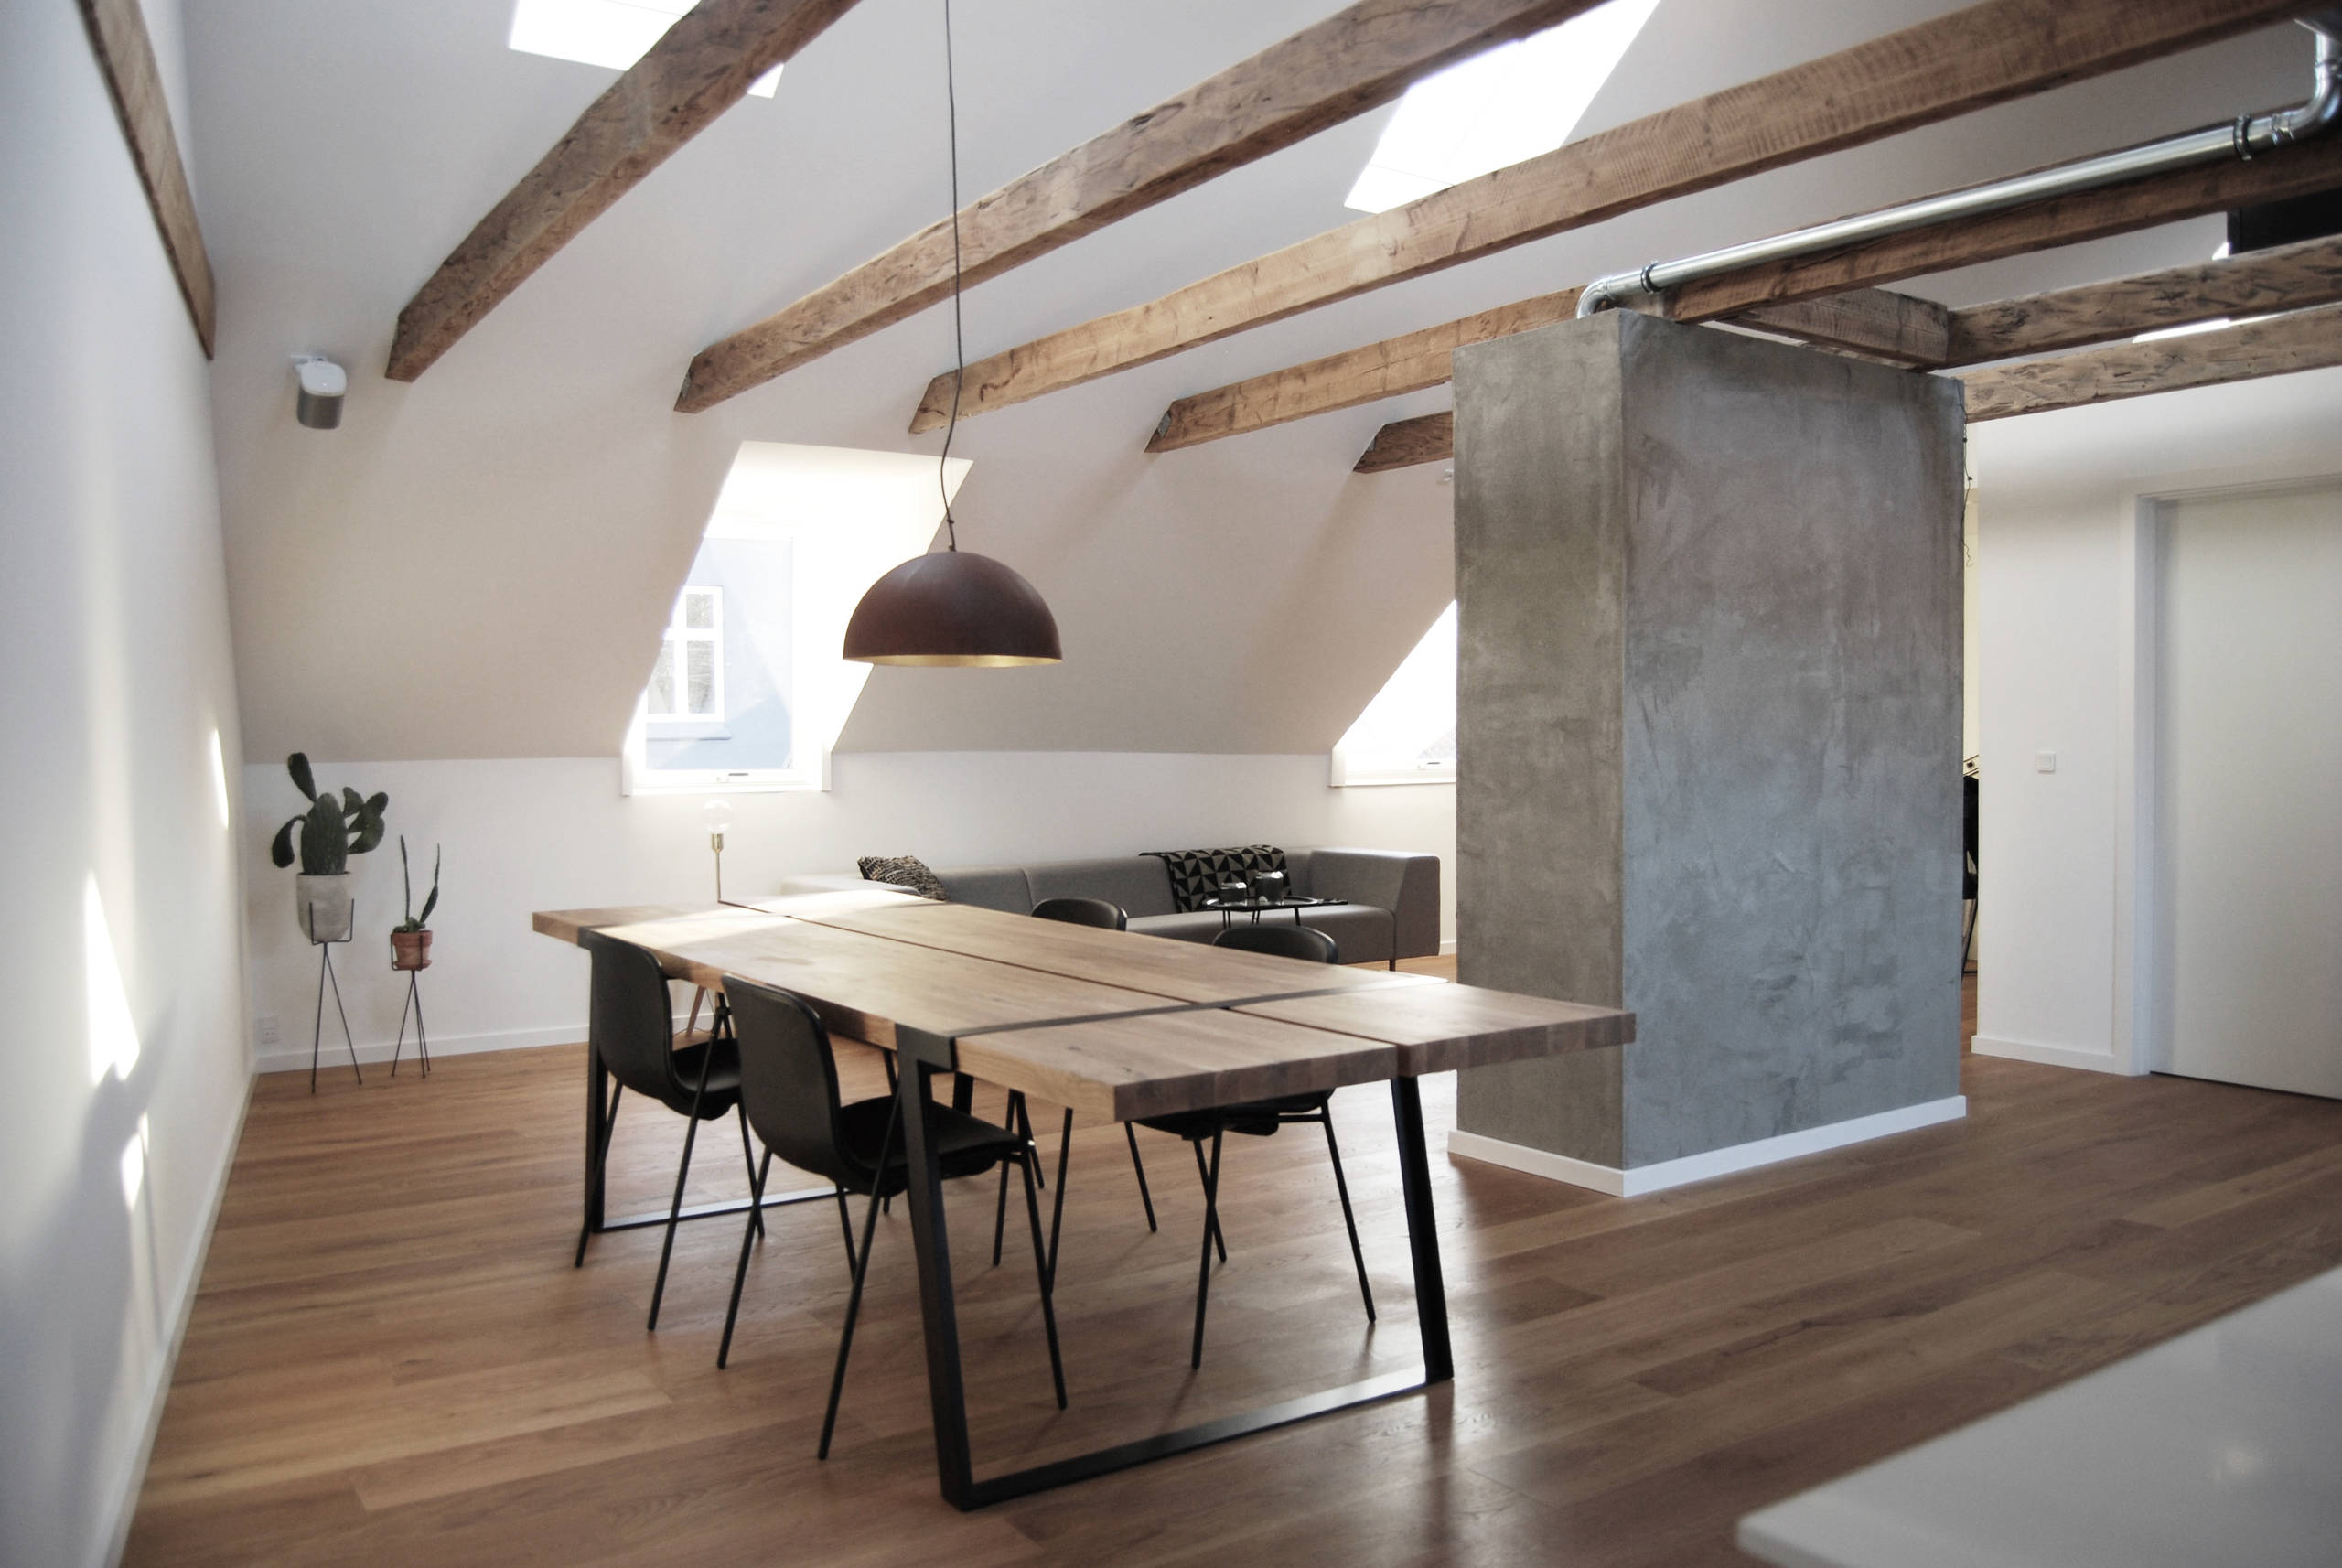 Renovering af lejlighed, Aarhus - Industrial - Dining Room - Aarhus - by  Hilberth & Jørgensen Arkitekter | Houzz